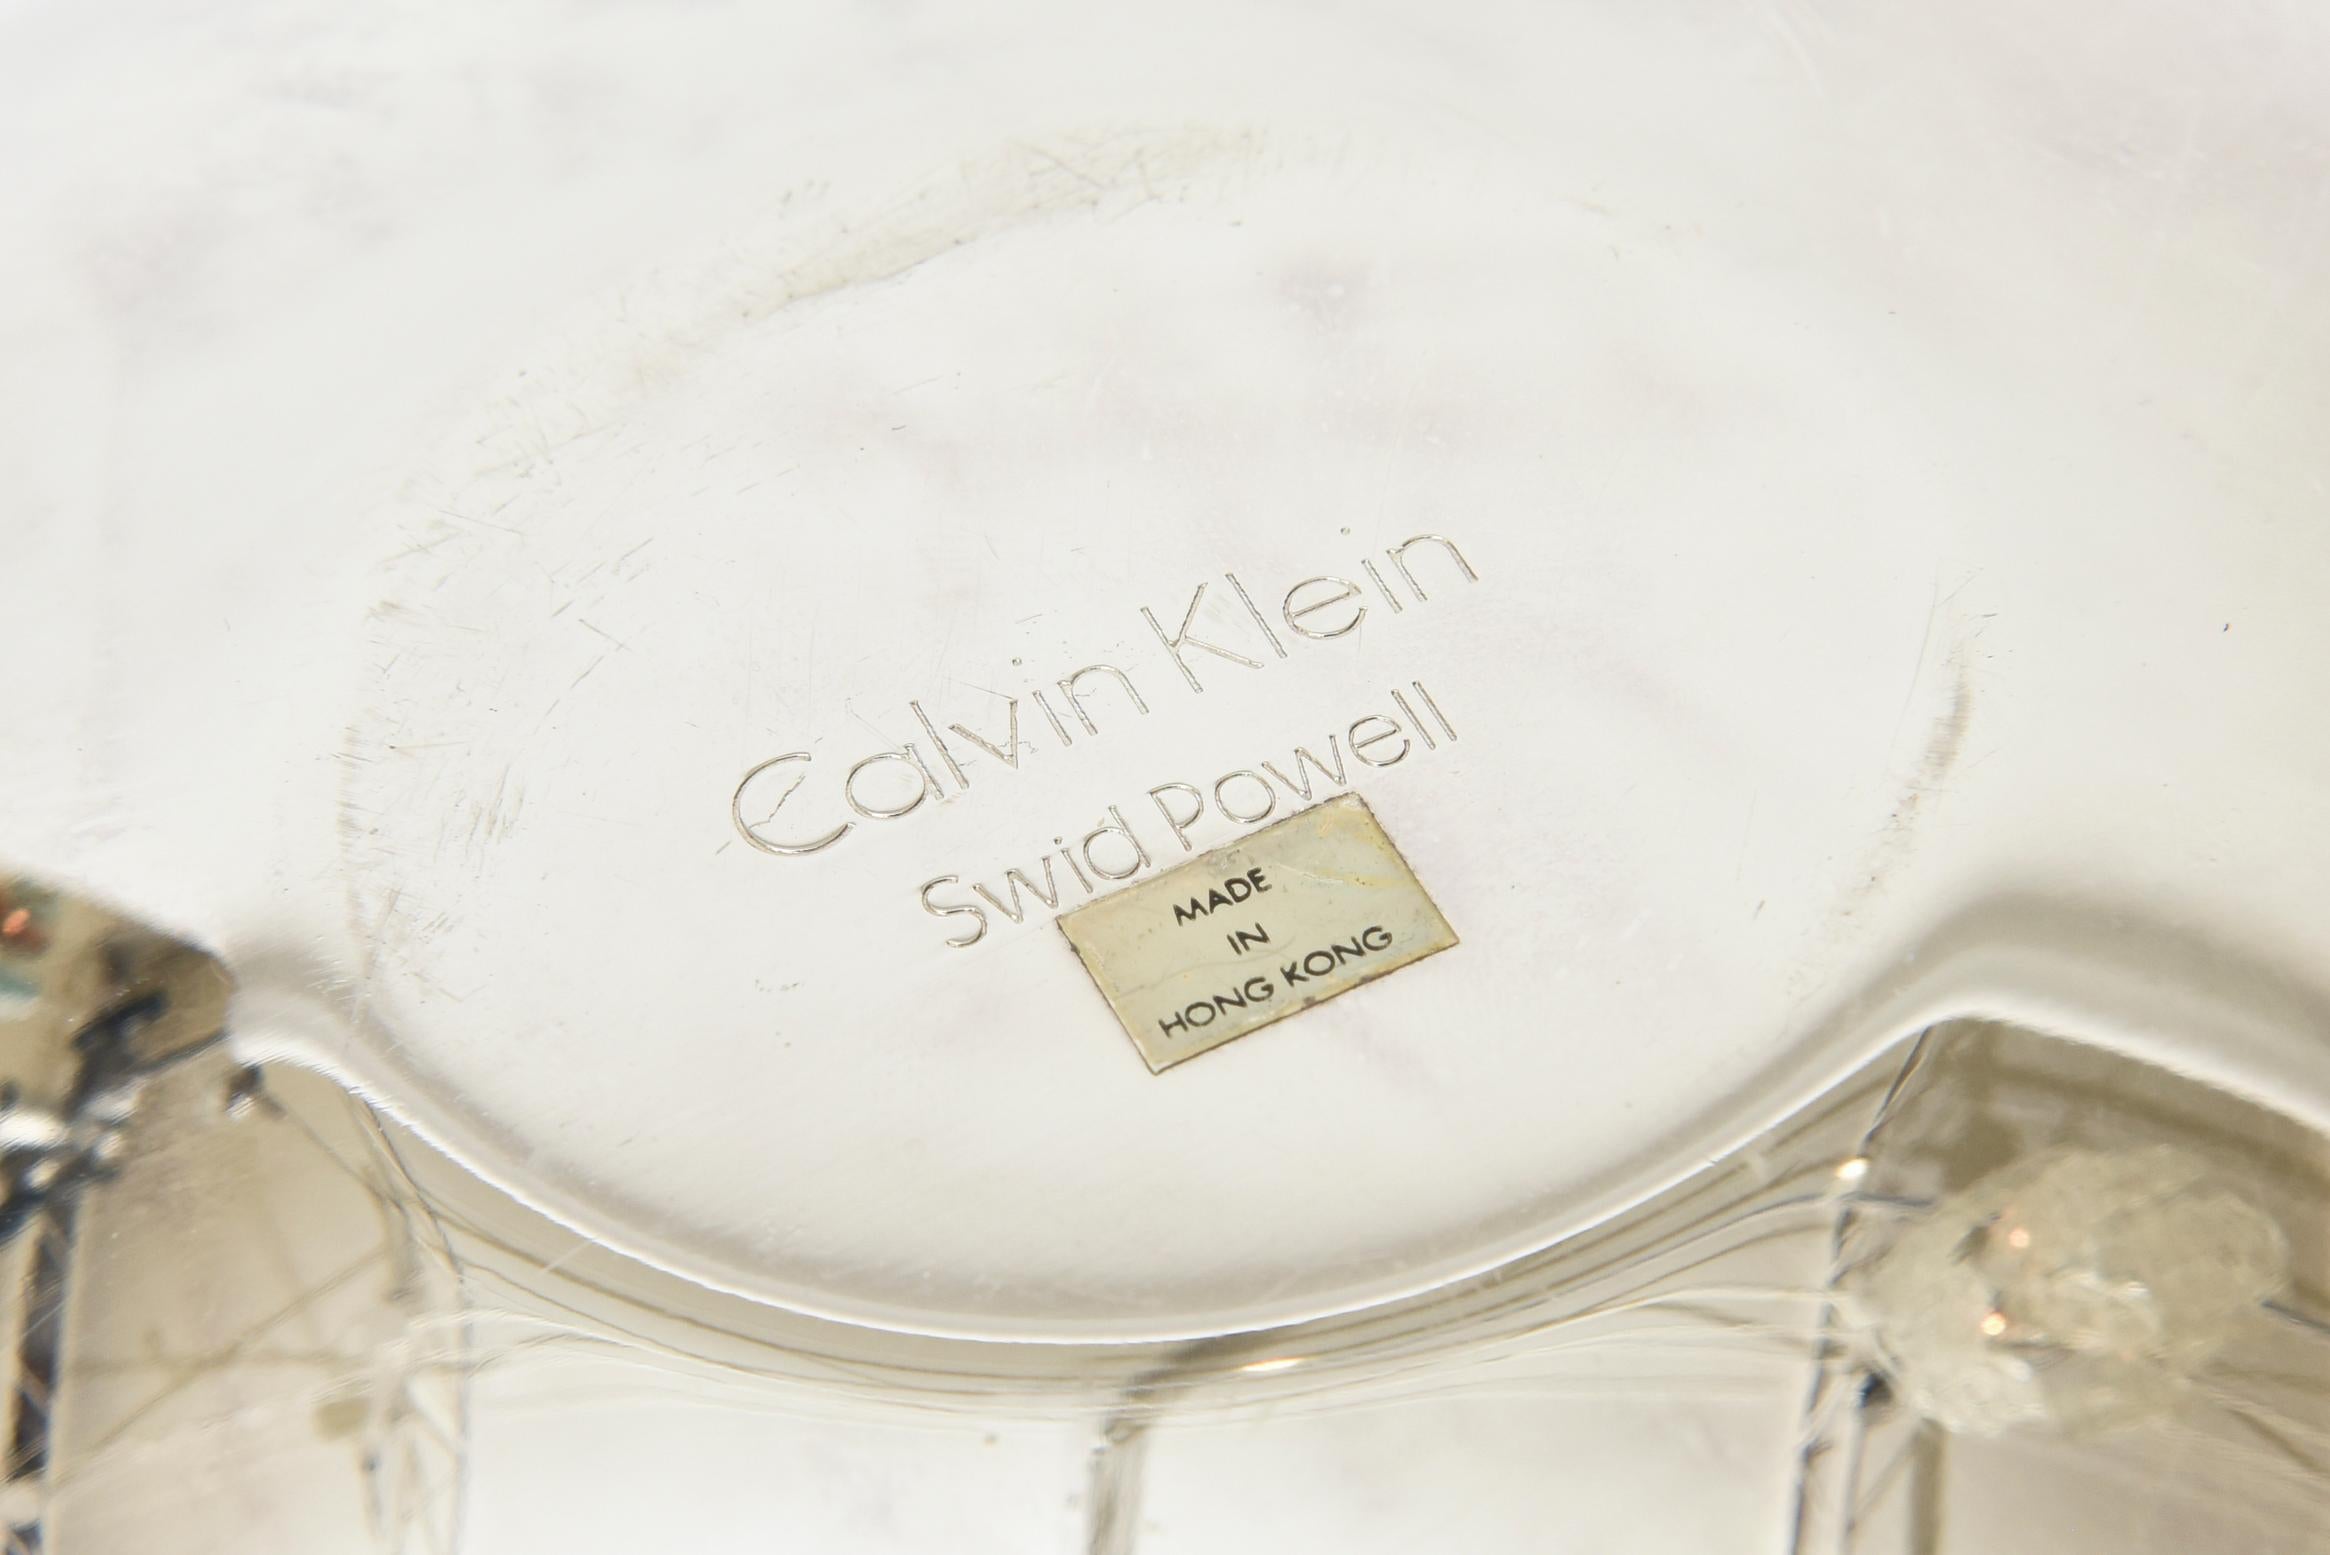 Calvin Klein for Swid Powell Silver Plate Caviar Bowl Barware 1